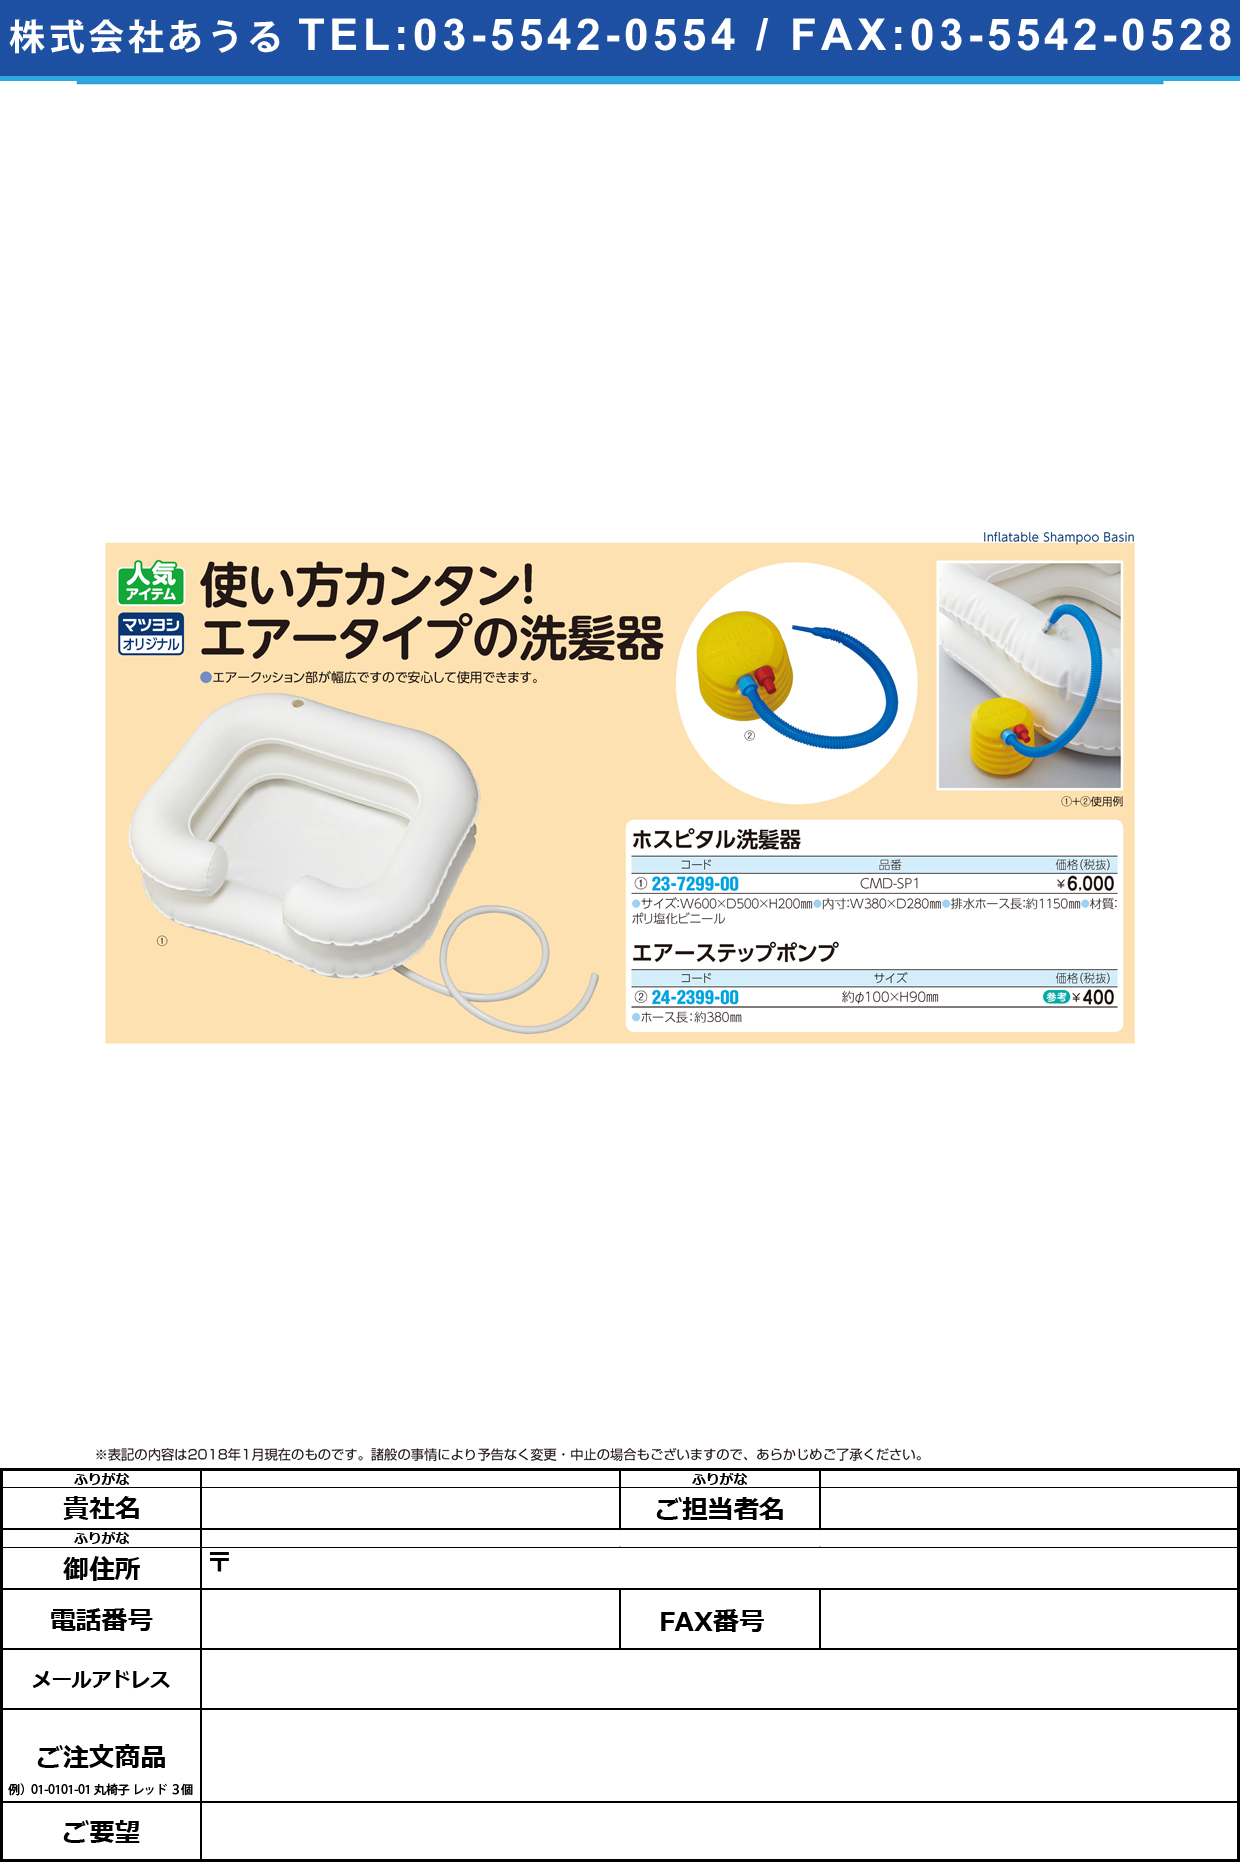 (23-7299-00)ホスピタル洗髪器 CMD-SP1 ﾎｽﾋﾟﾀﾙｾﾝﾊﾟﾂｷ【1個単位】【2019年カタログ商品】